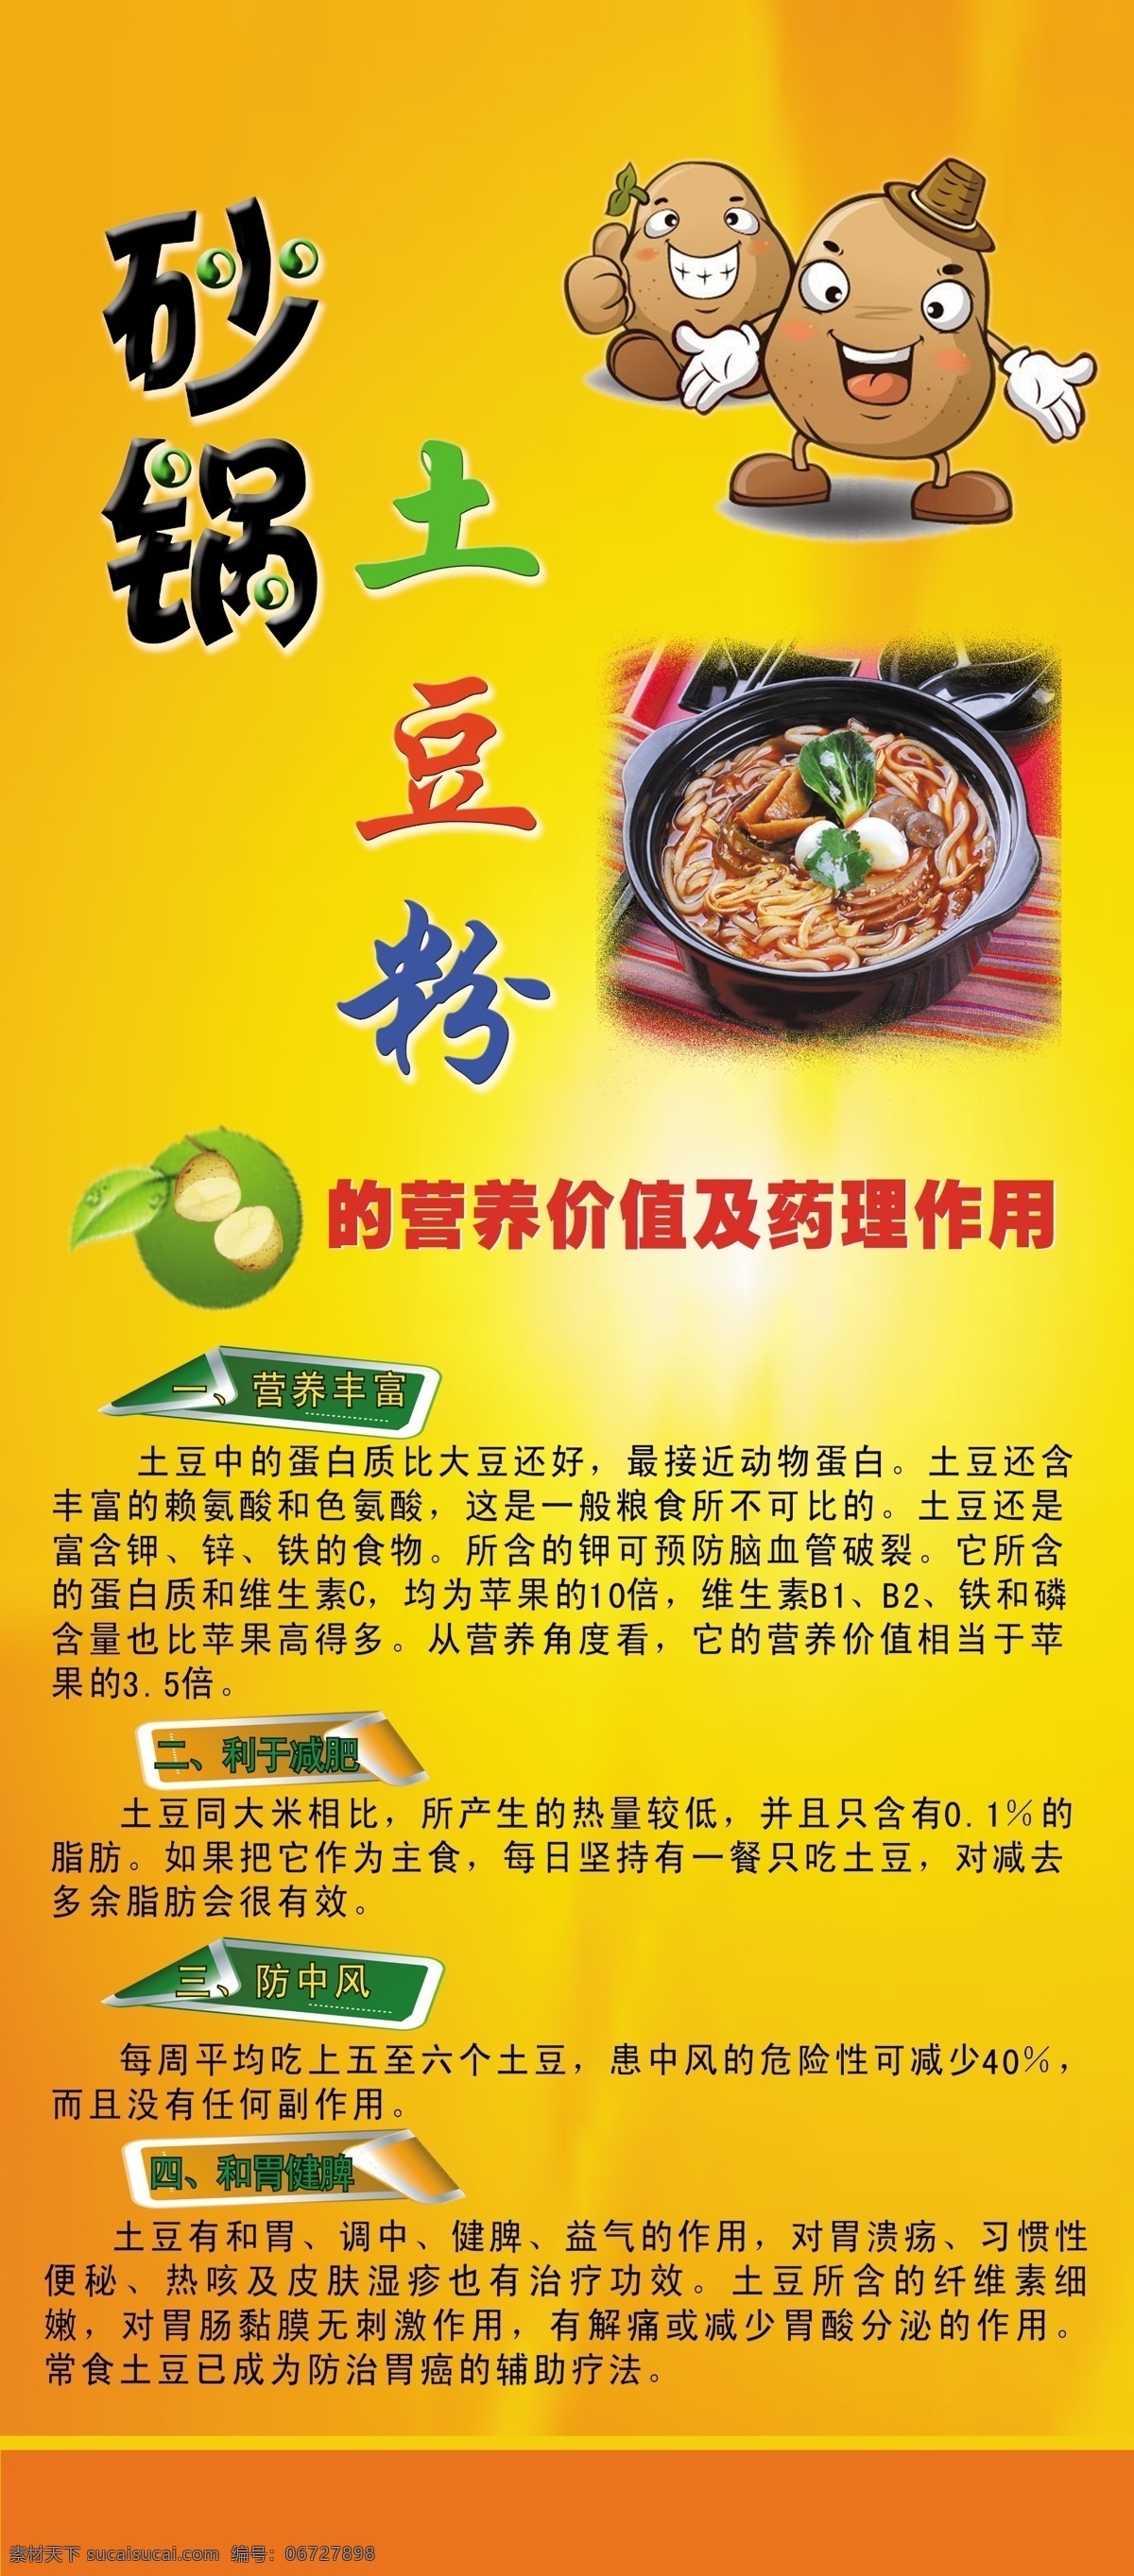 砂锅 土豆粉 海报 x展架 卡通 土豆营养价值 广告设计模板 源文件